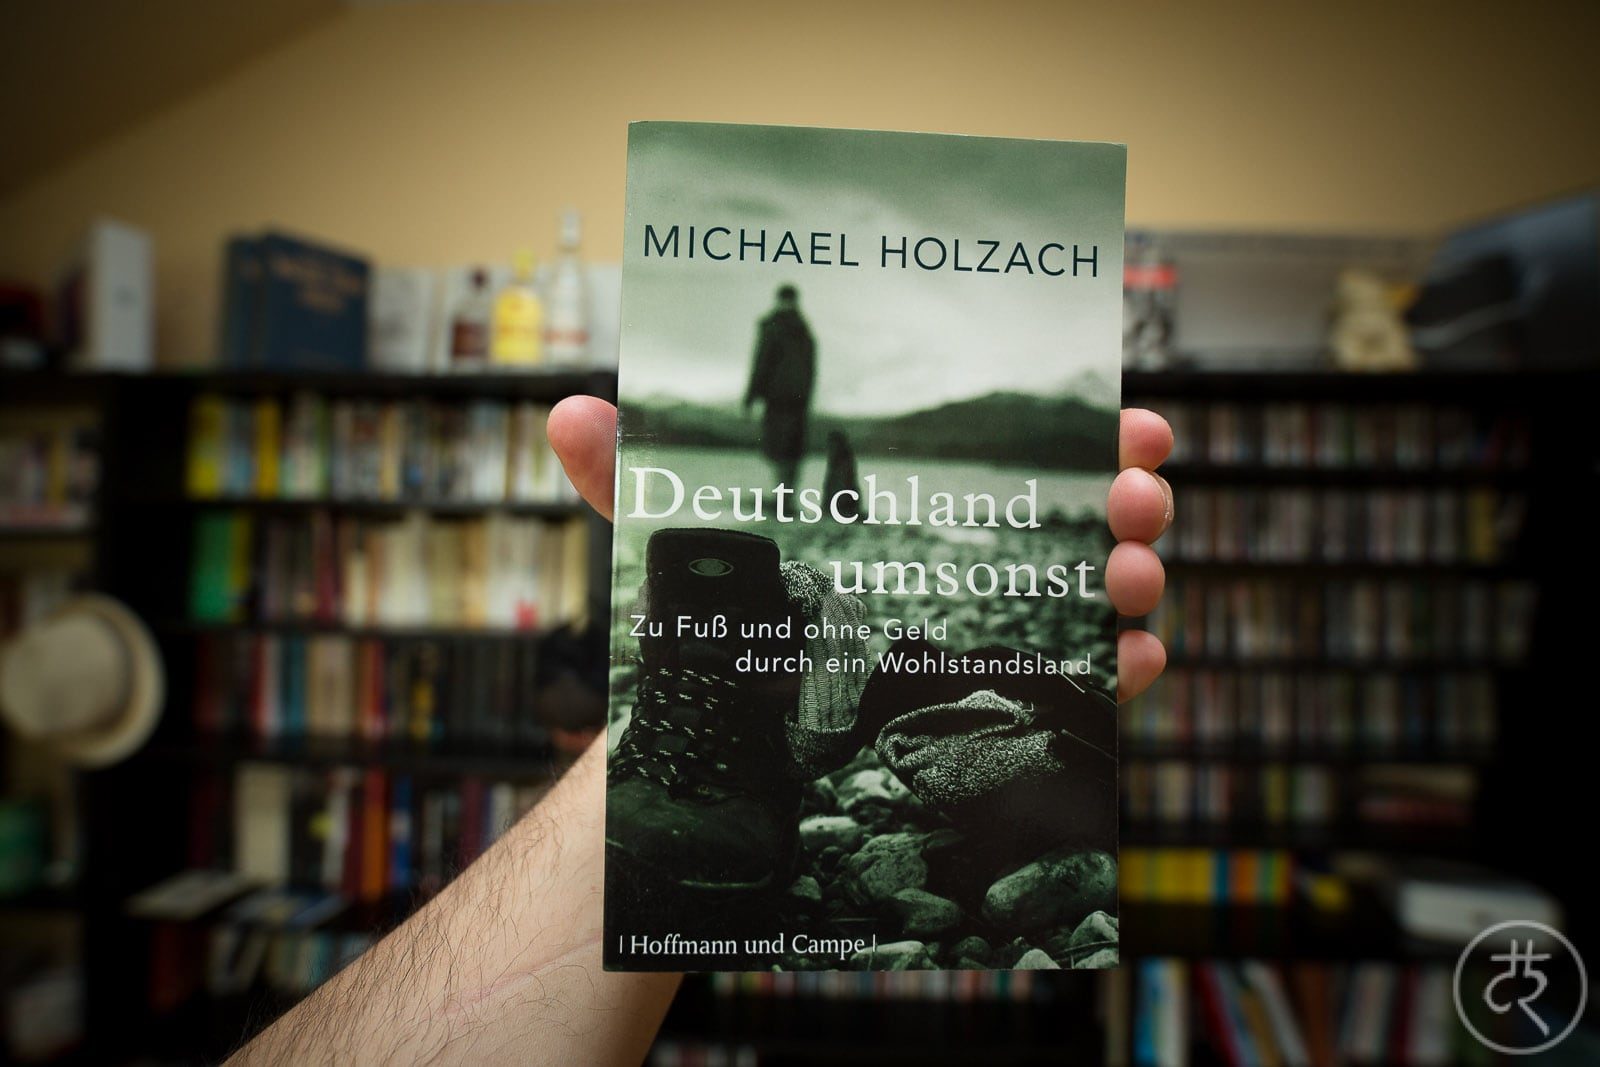 Michael Holzach's 